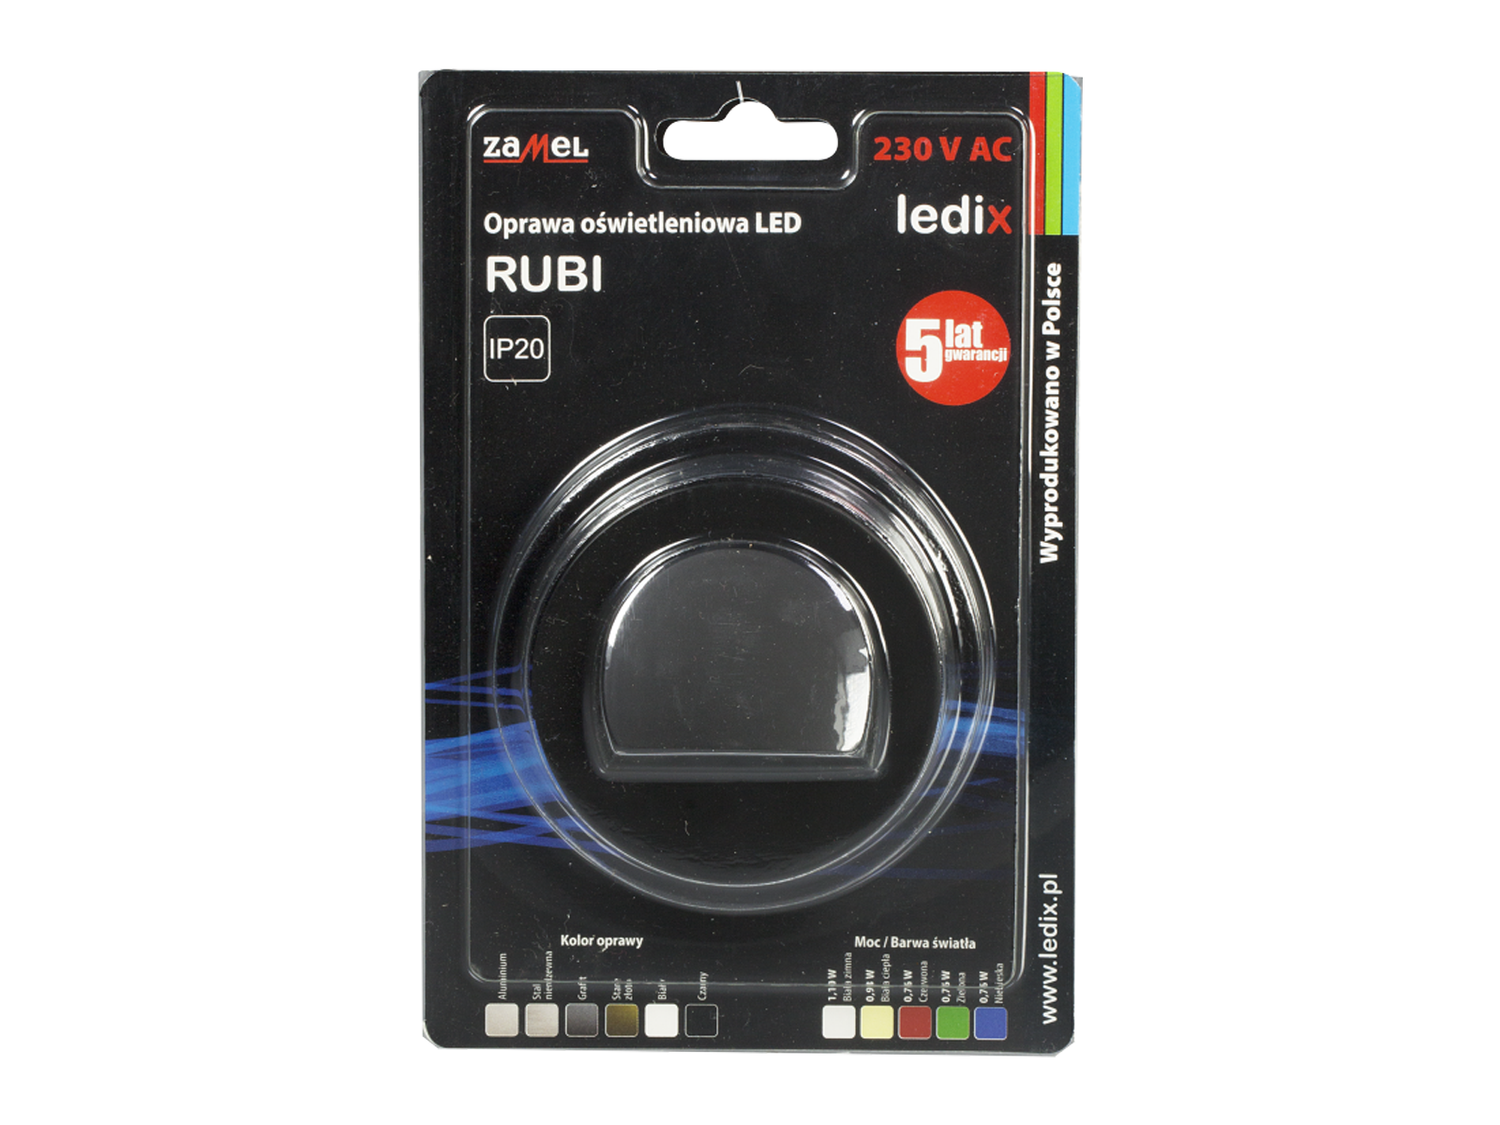 Svítidlo LED pod omítku LEDIX RUBI 230V AC, černé, studená bílá, IP20